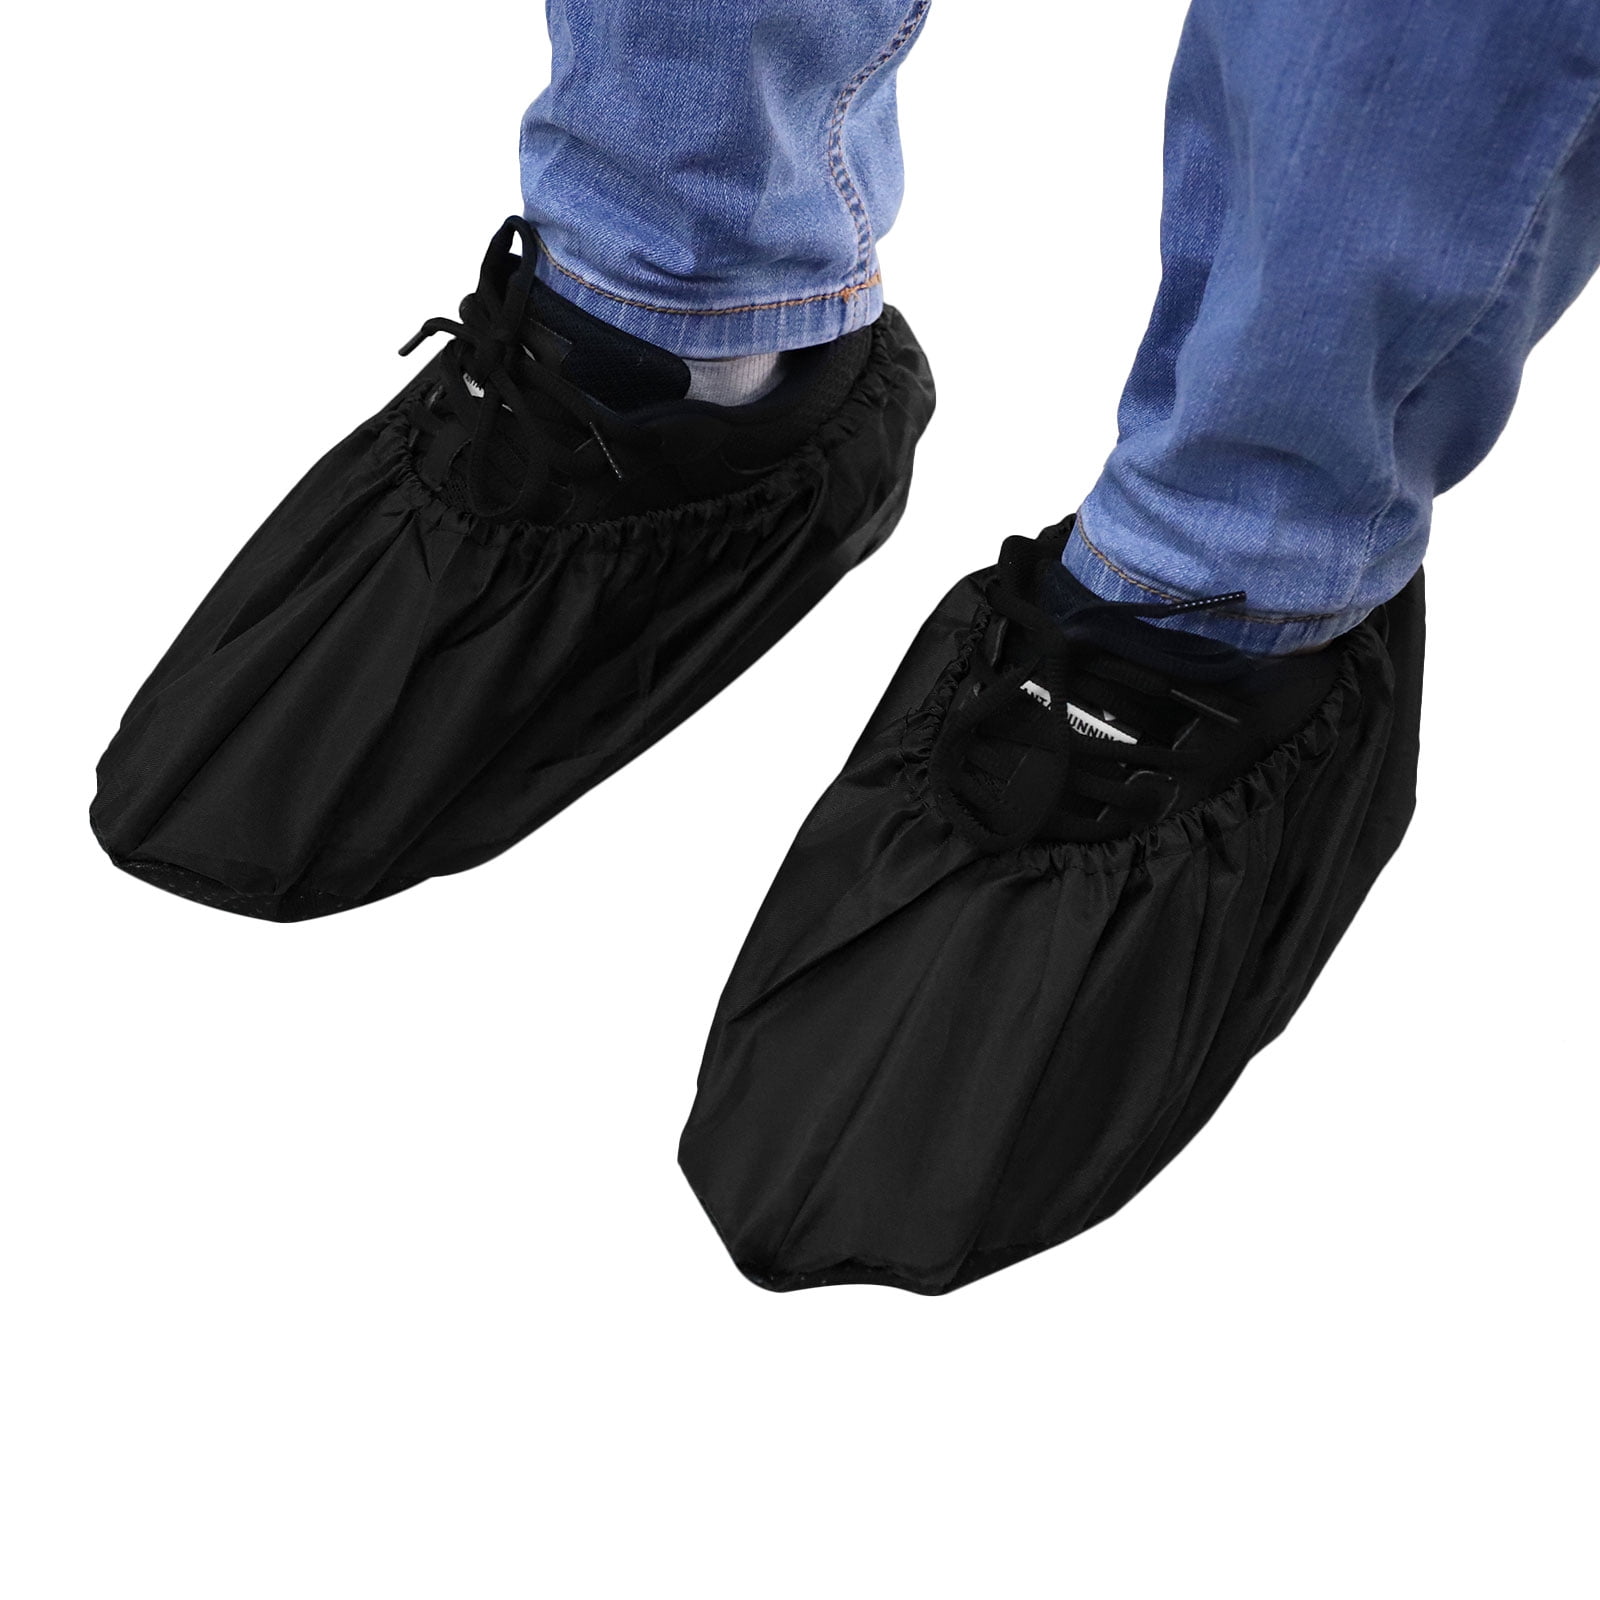 reusable shoe booties